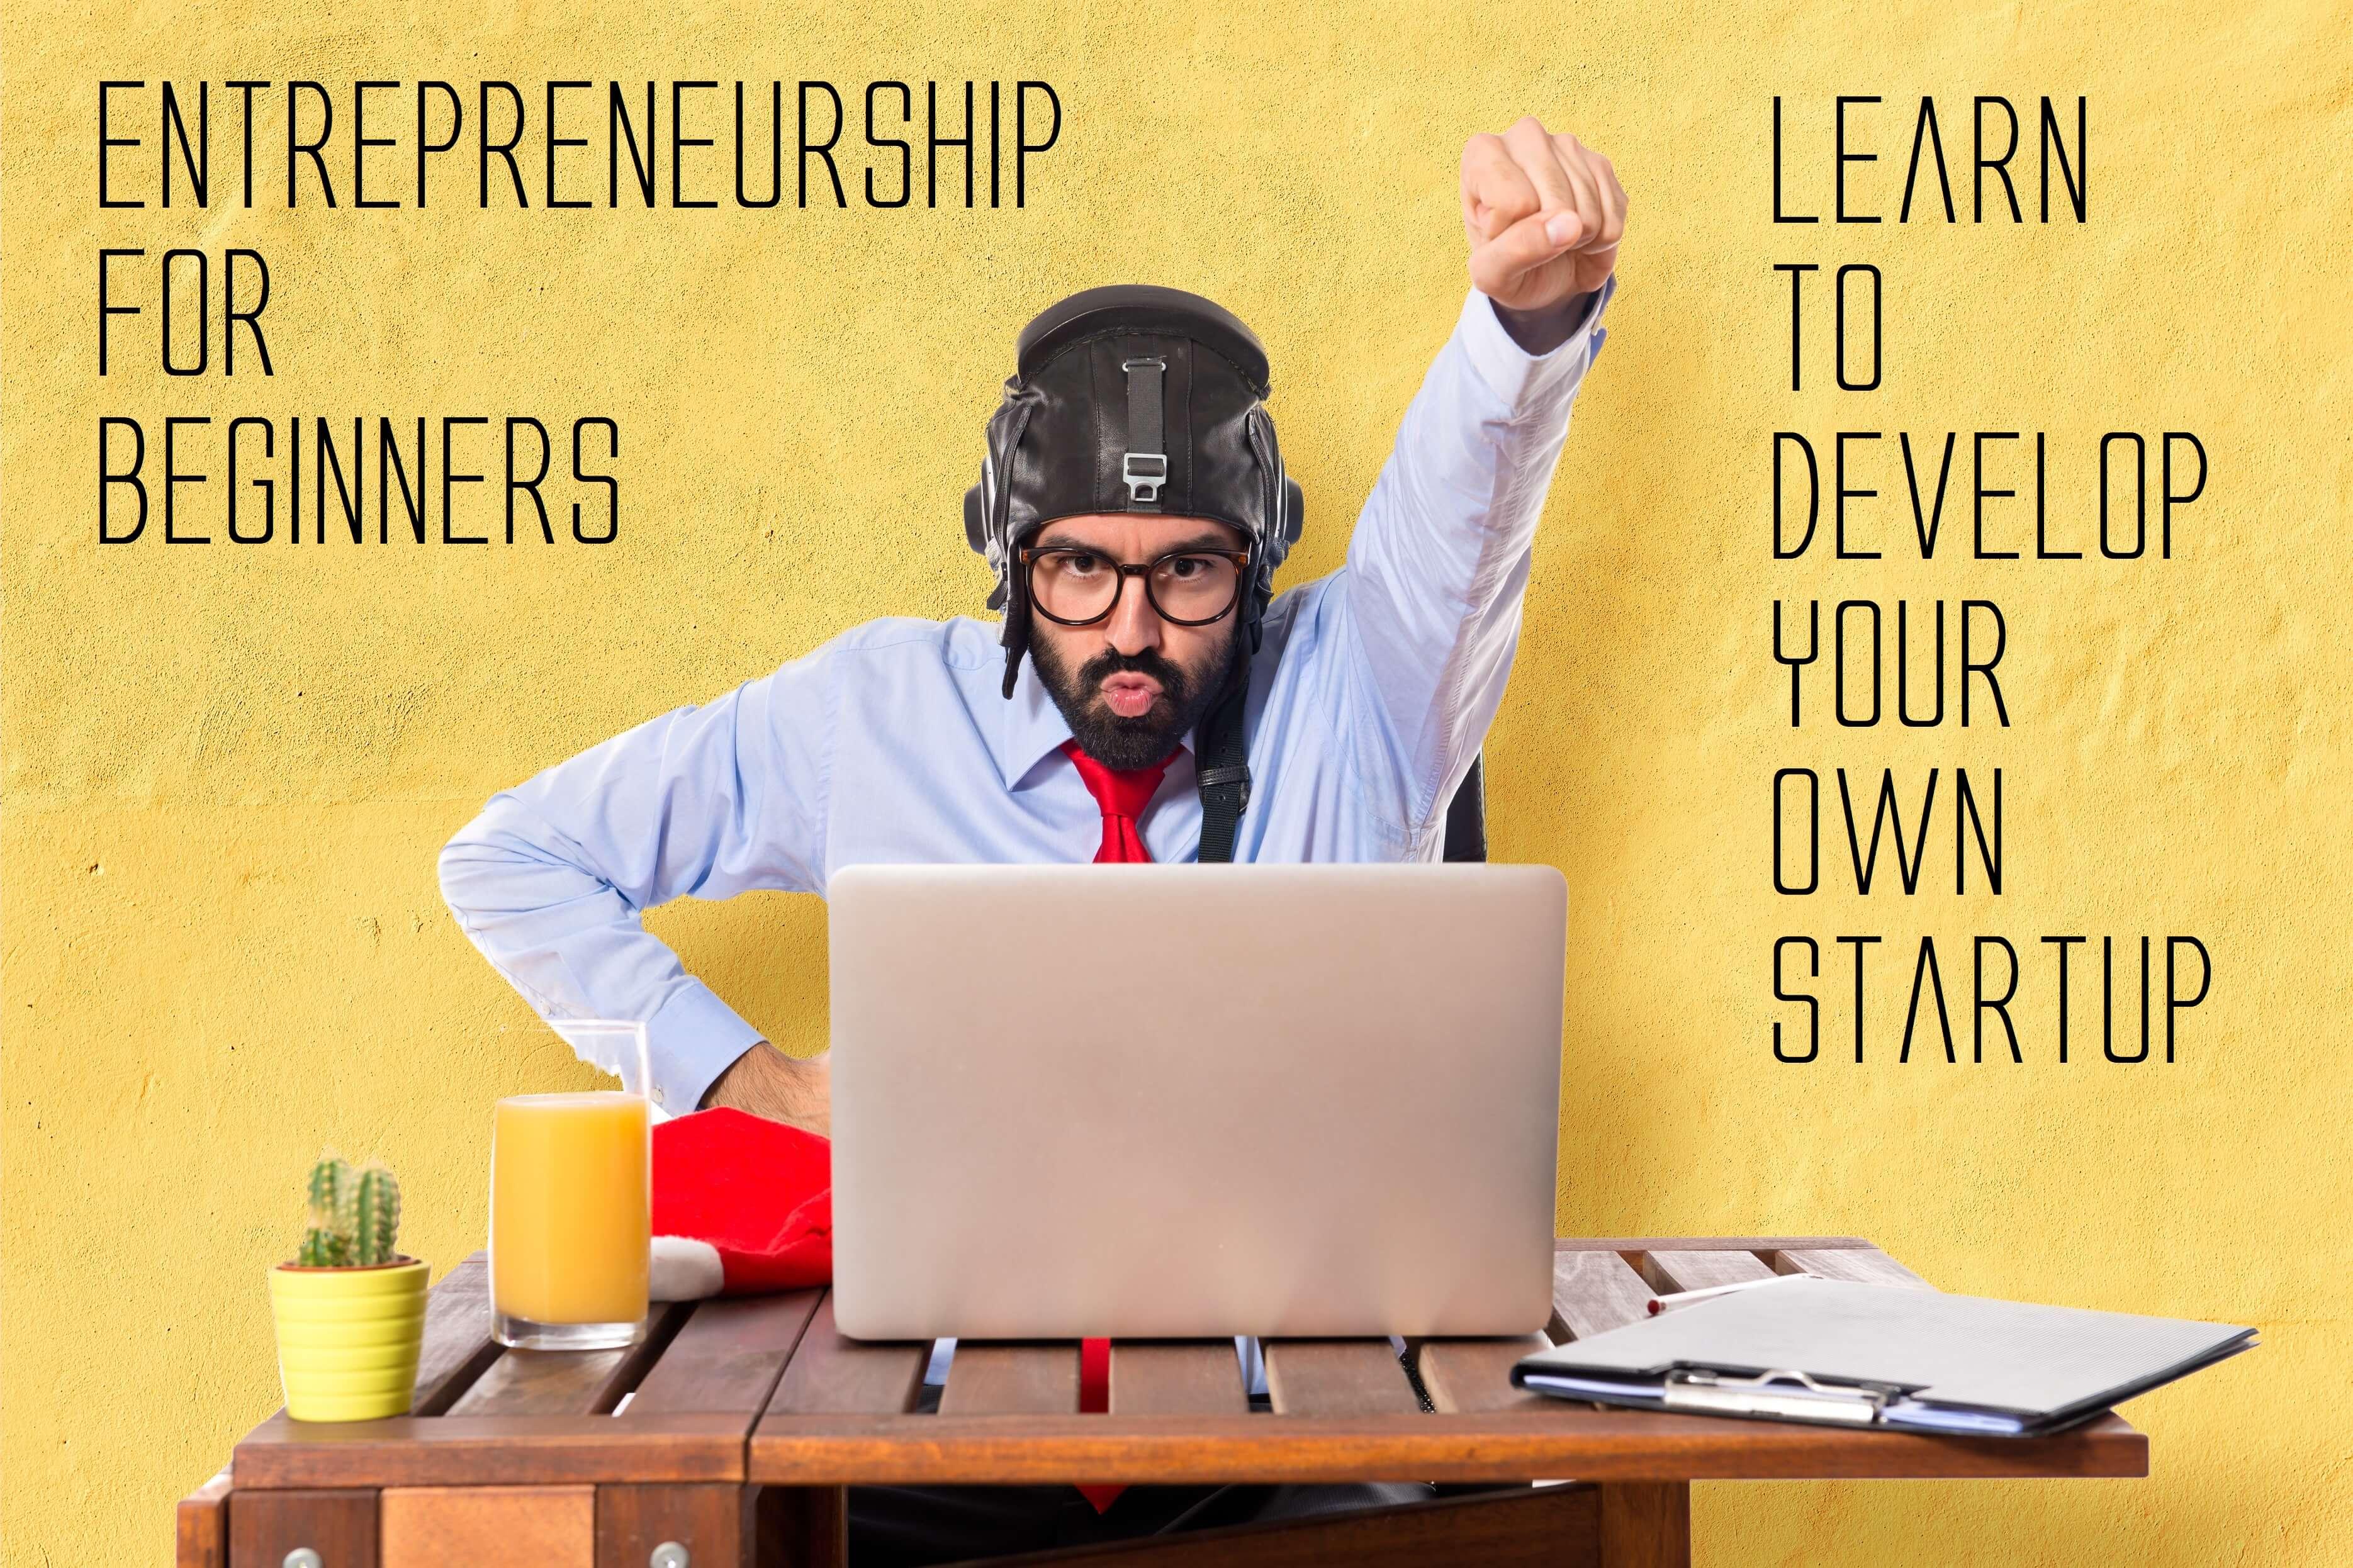 Entrepreneurship for Beginners - Startup | Entrepreneur Hackathon Webinar